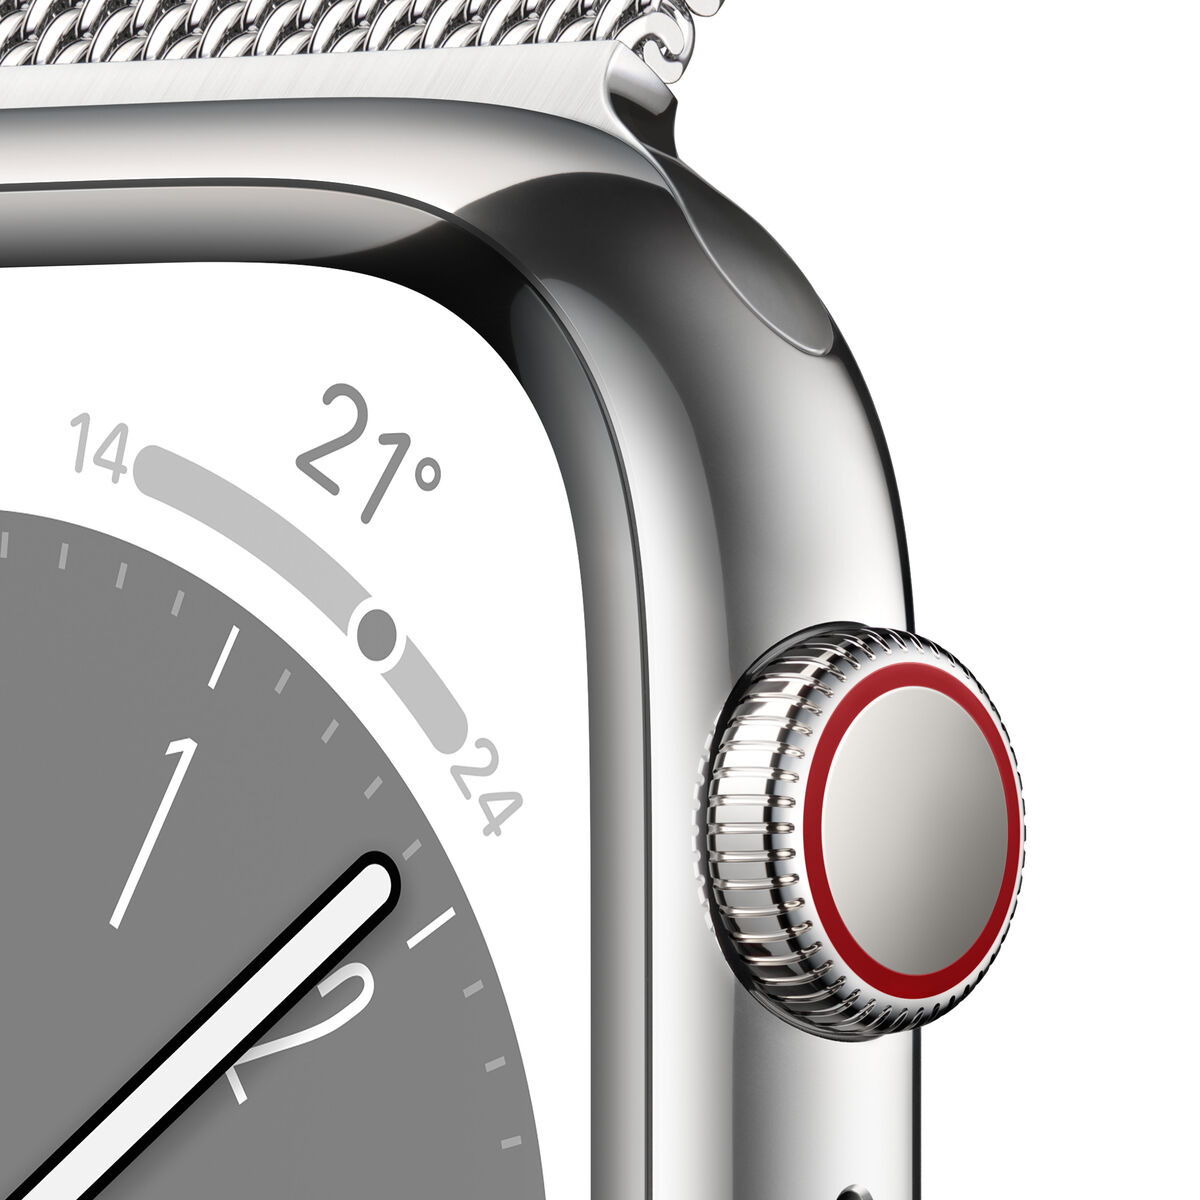 Reloj Inteligente Apple Watch Serie 8